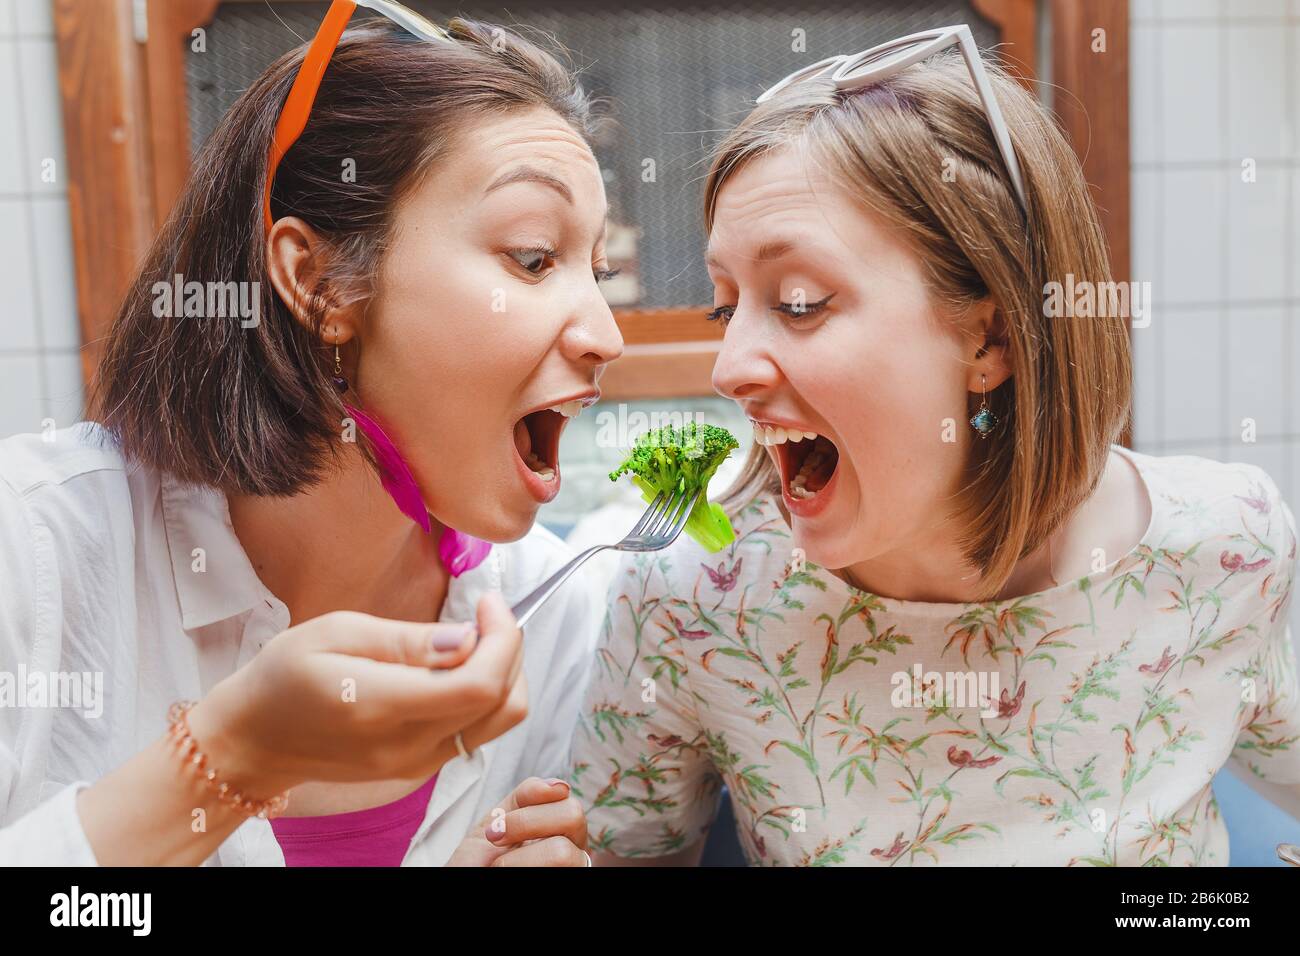 portrait de deux filles amis mangeant le brocoli avec une fourchette Banque D'Images